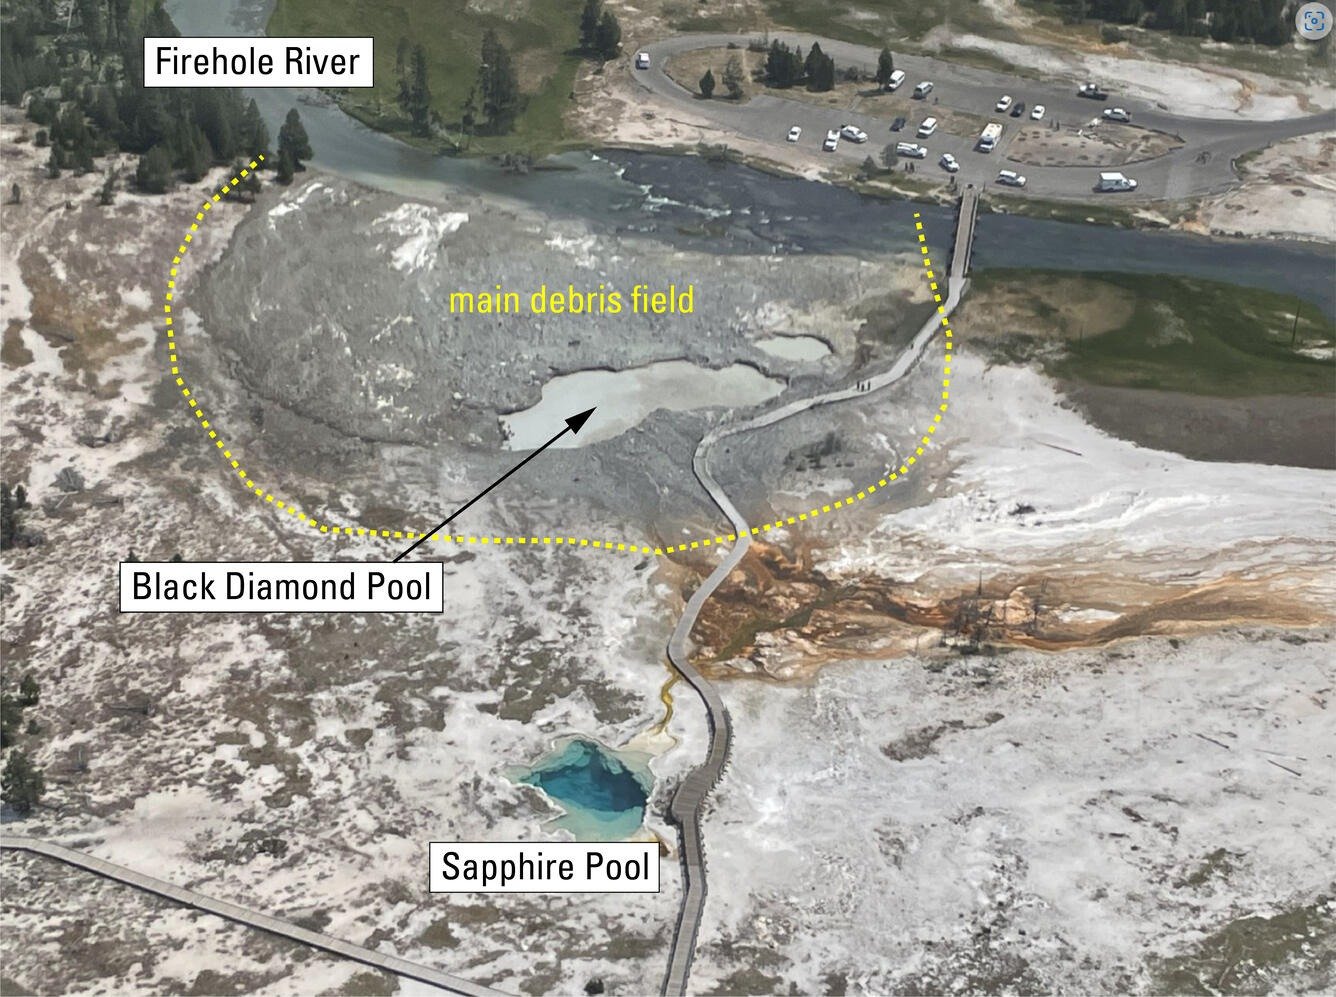 23 Temmuz'da Yellowstone'da meydana gelen patlamanın sonrasına ait hava fotoğrafı.